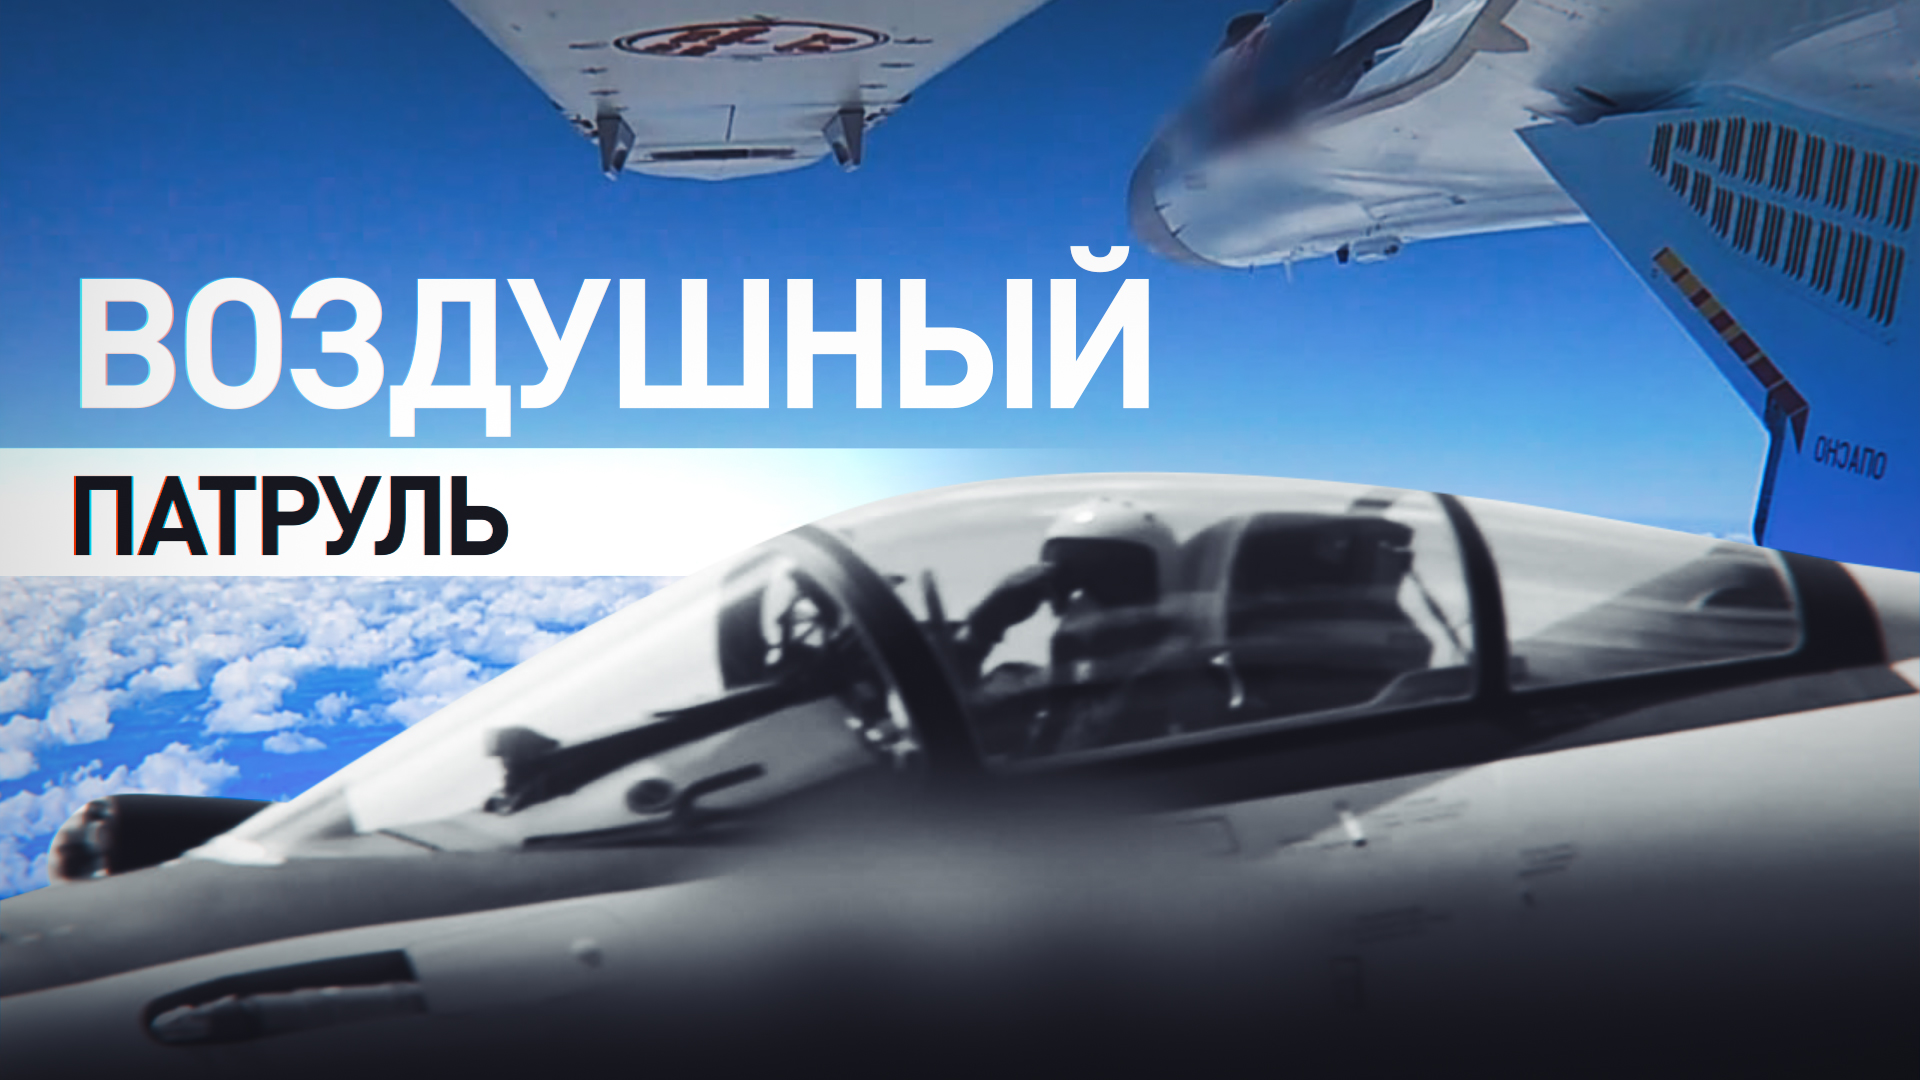 Истребитель Су-35С выполнил задачу по сопровождению бомбардировщиков в зоне СВО